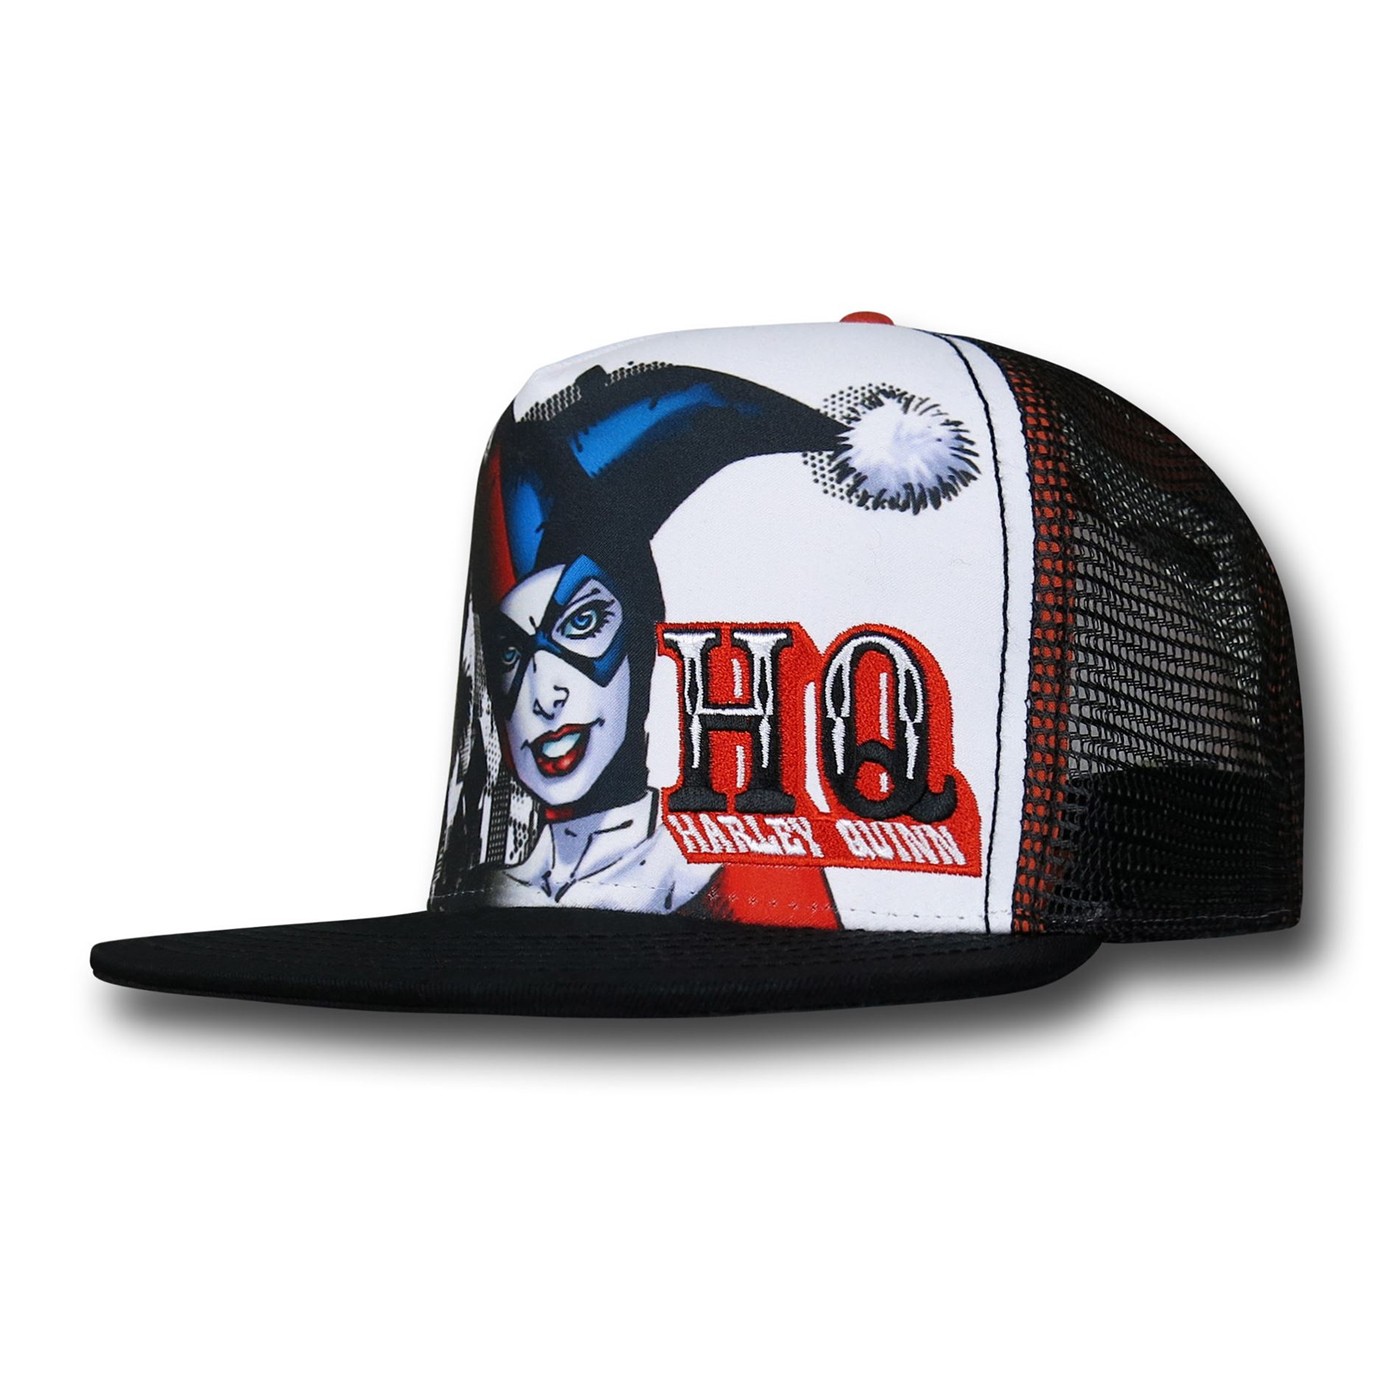 Harley Quinn Trucker Adjustable Cap